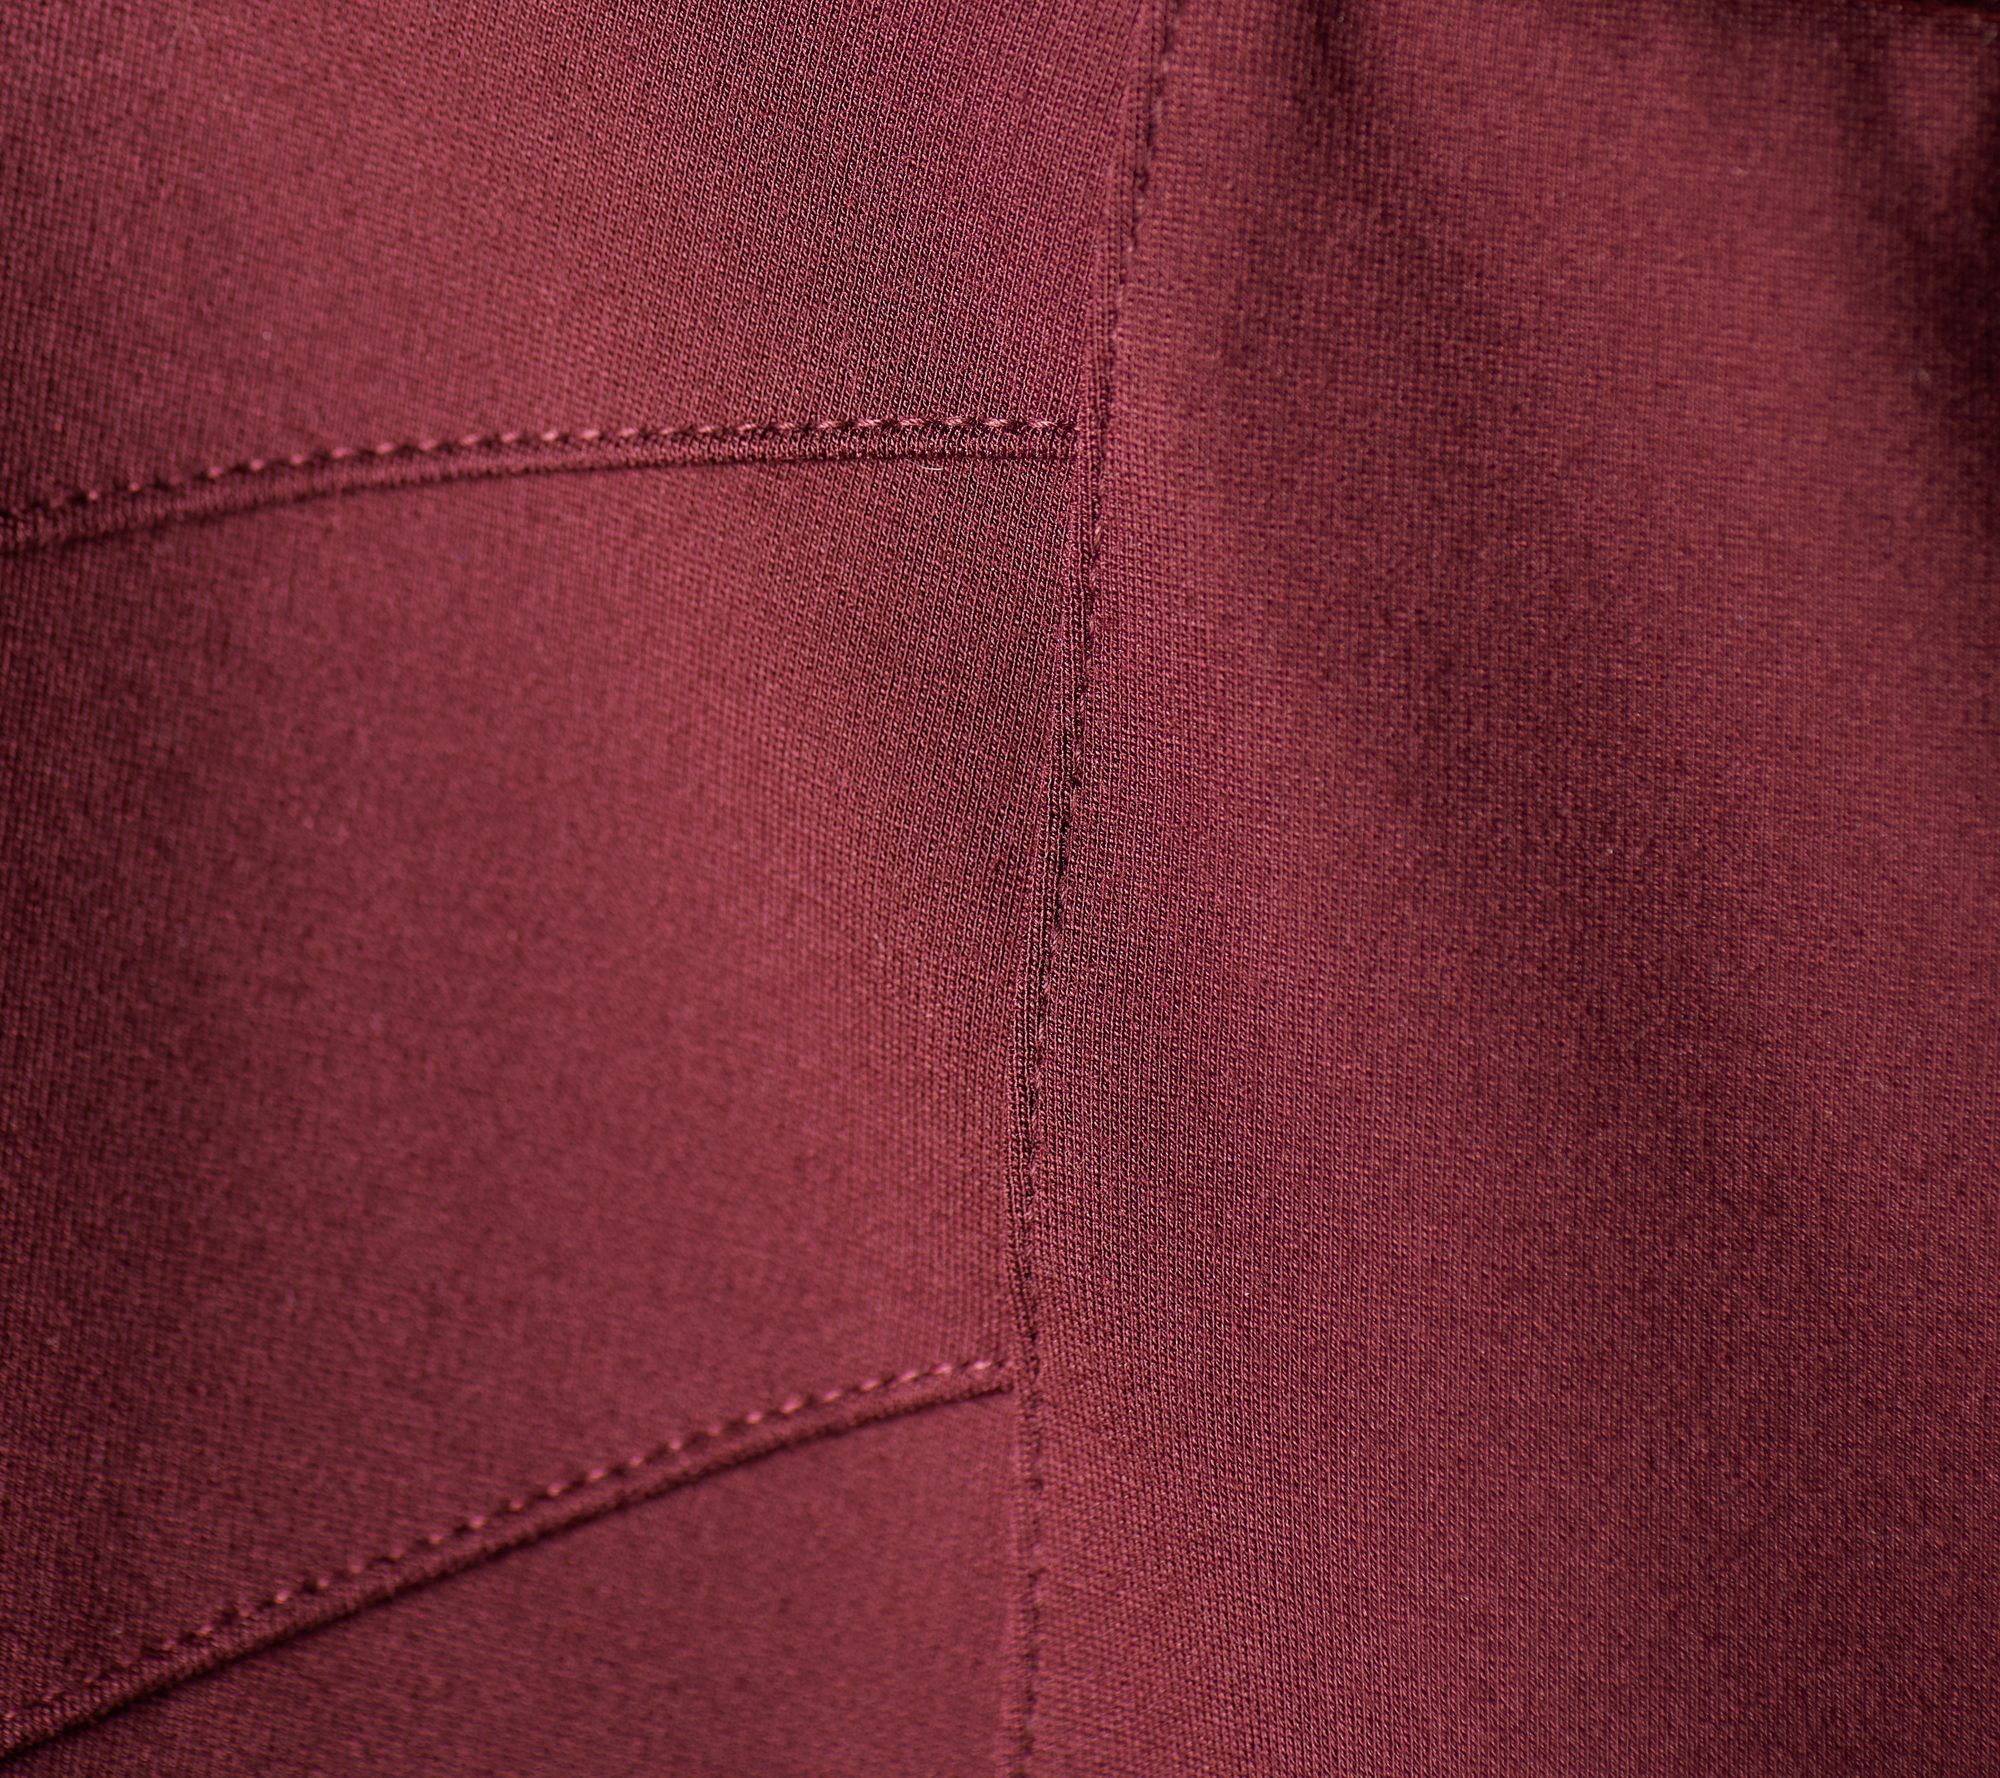 Skechers Ponte Knit Pull-On Pants w/ Seam Detail Women's Dress Sz XL Black  